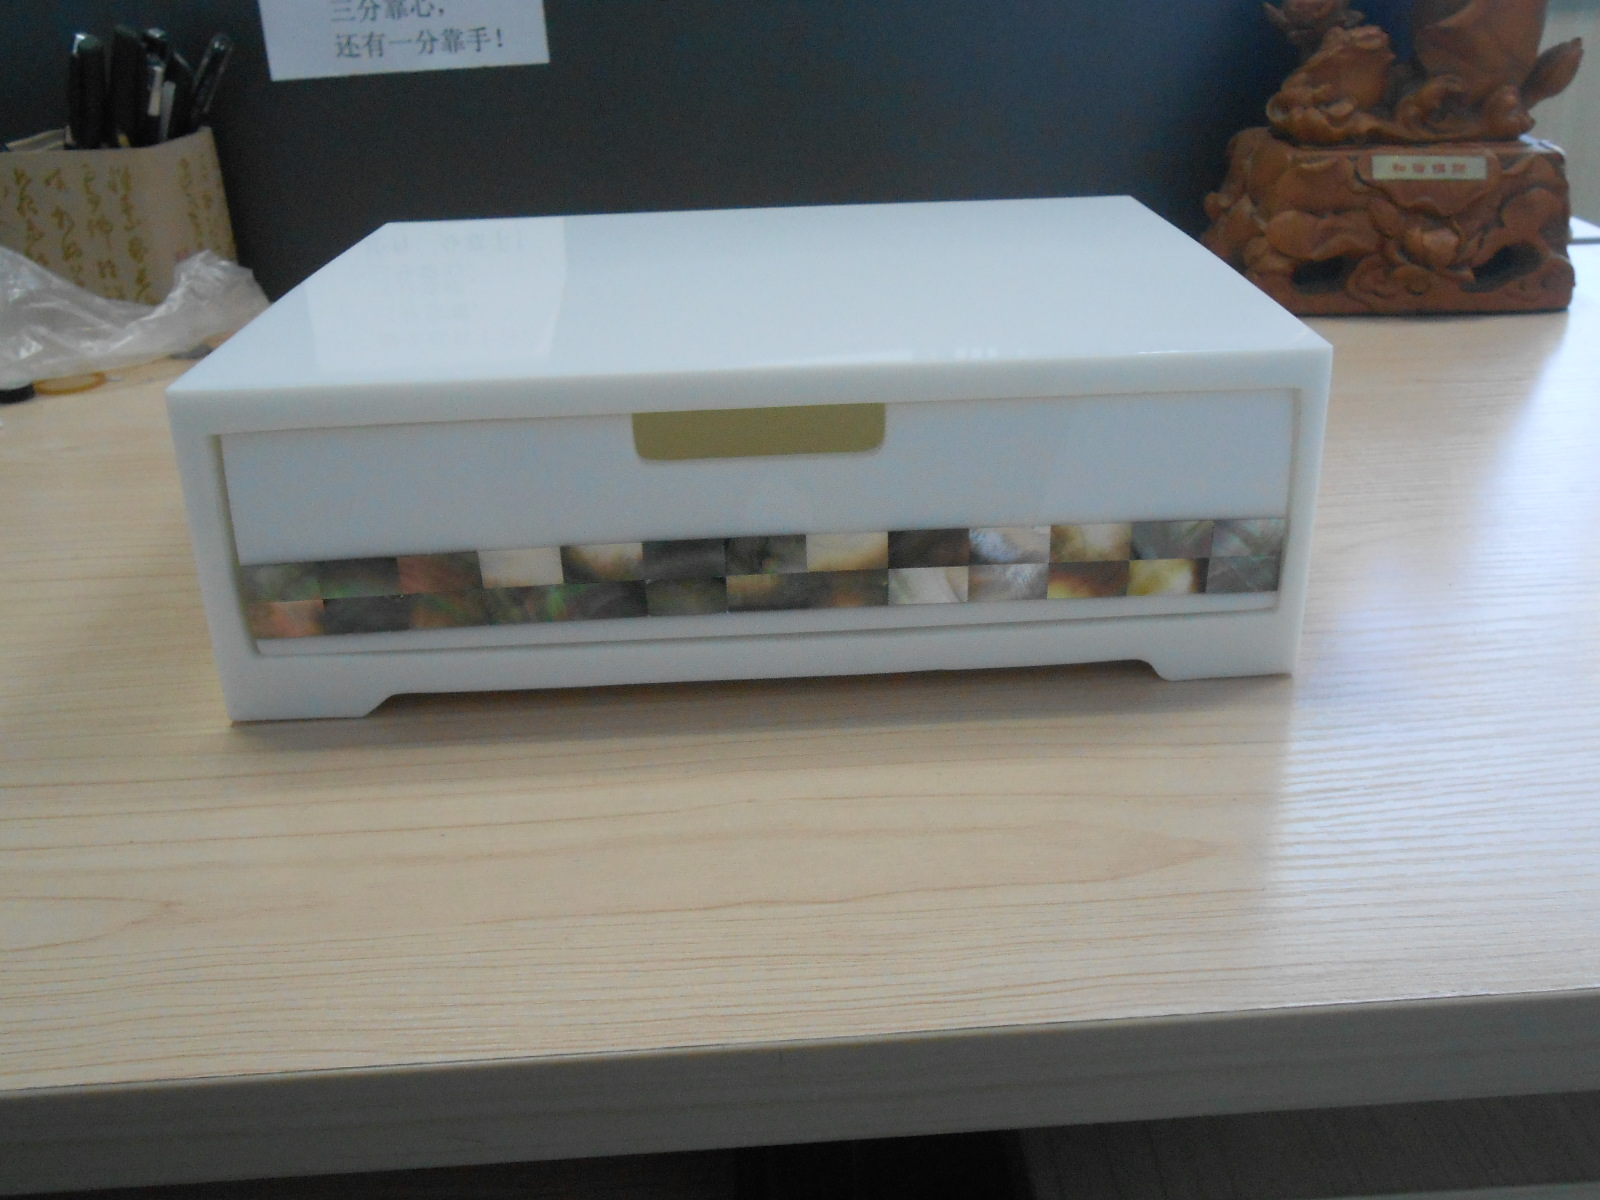 深圳市一次性用品盒厂家一次性用品盒价格 一次性用品盒价格 一次性用品盒厂家 一次性用品